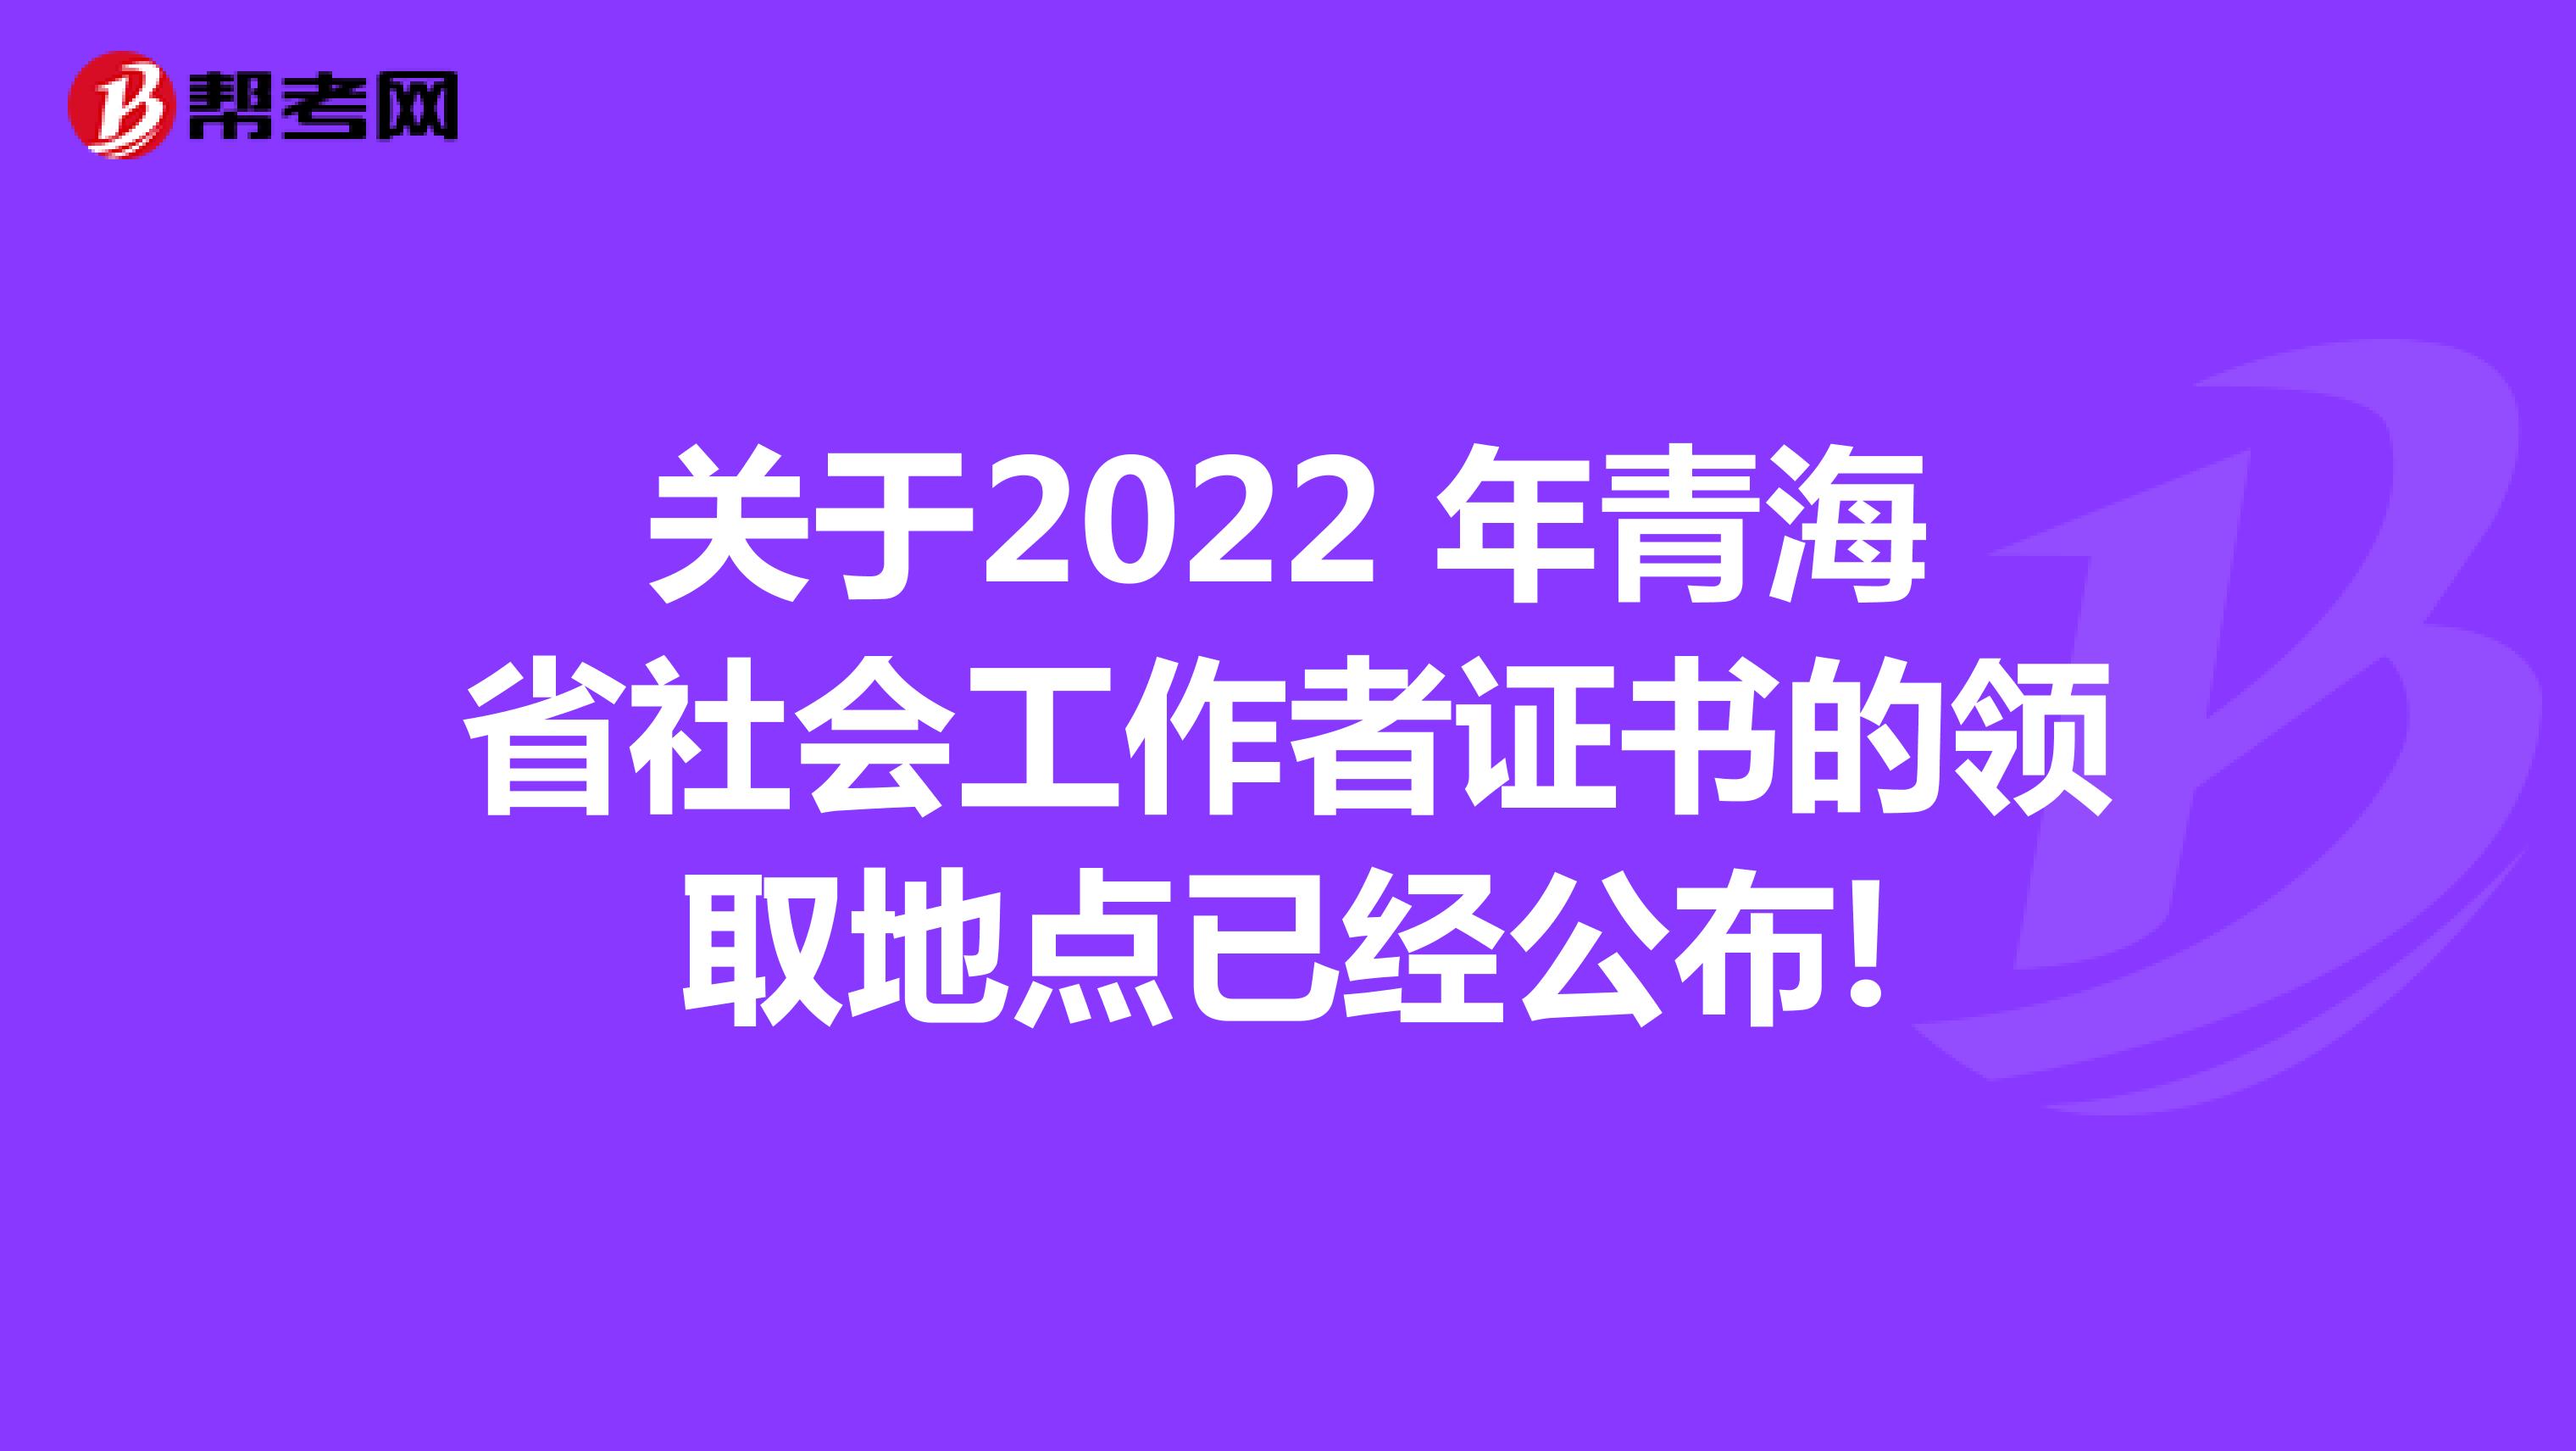 关于2022 年青海省社会工作者证书的领取地点已经公布!